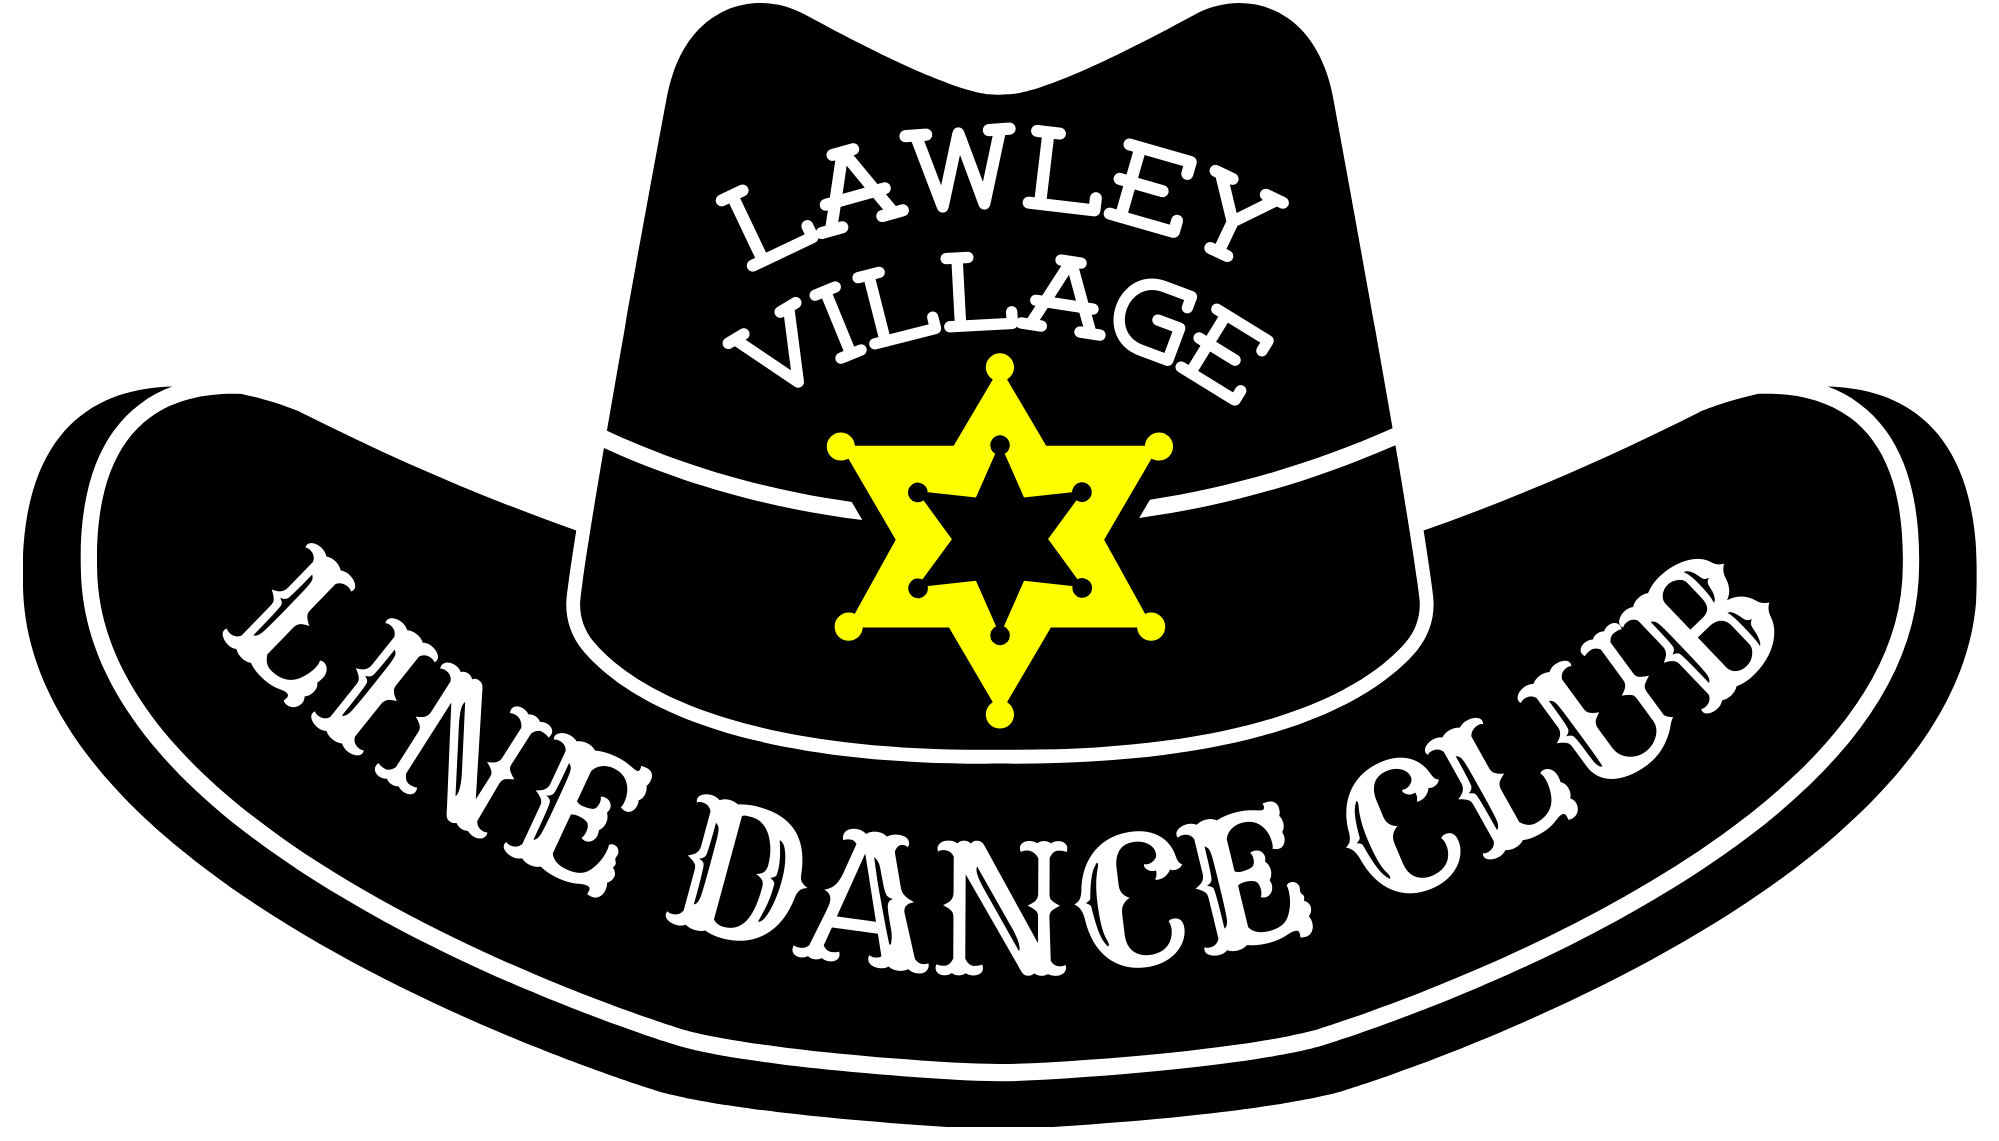 Lawley Village Line Dance Club